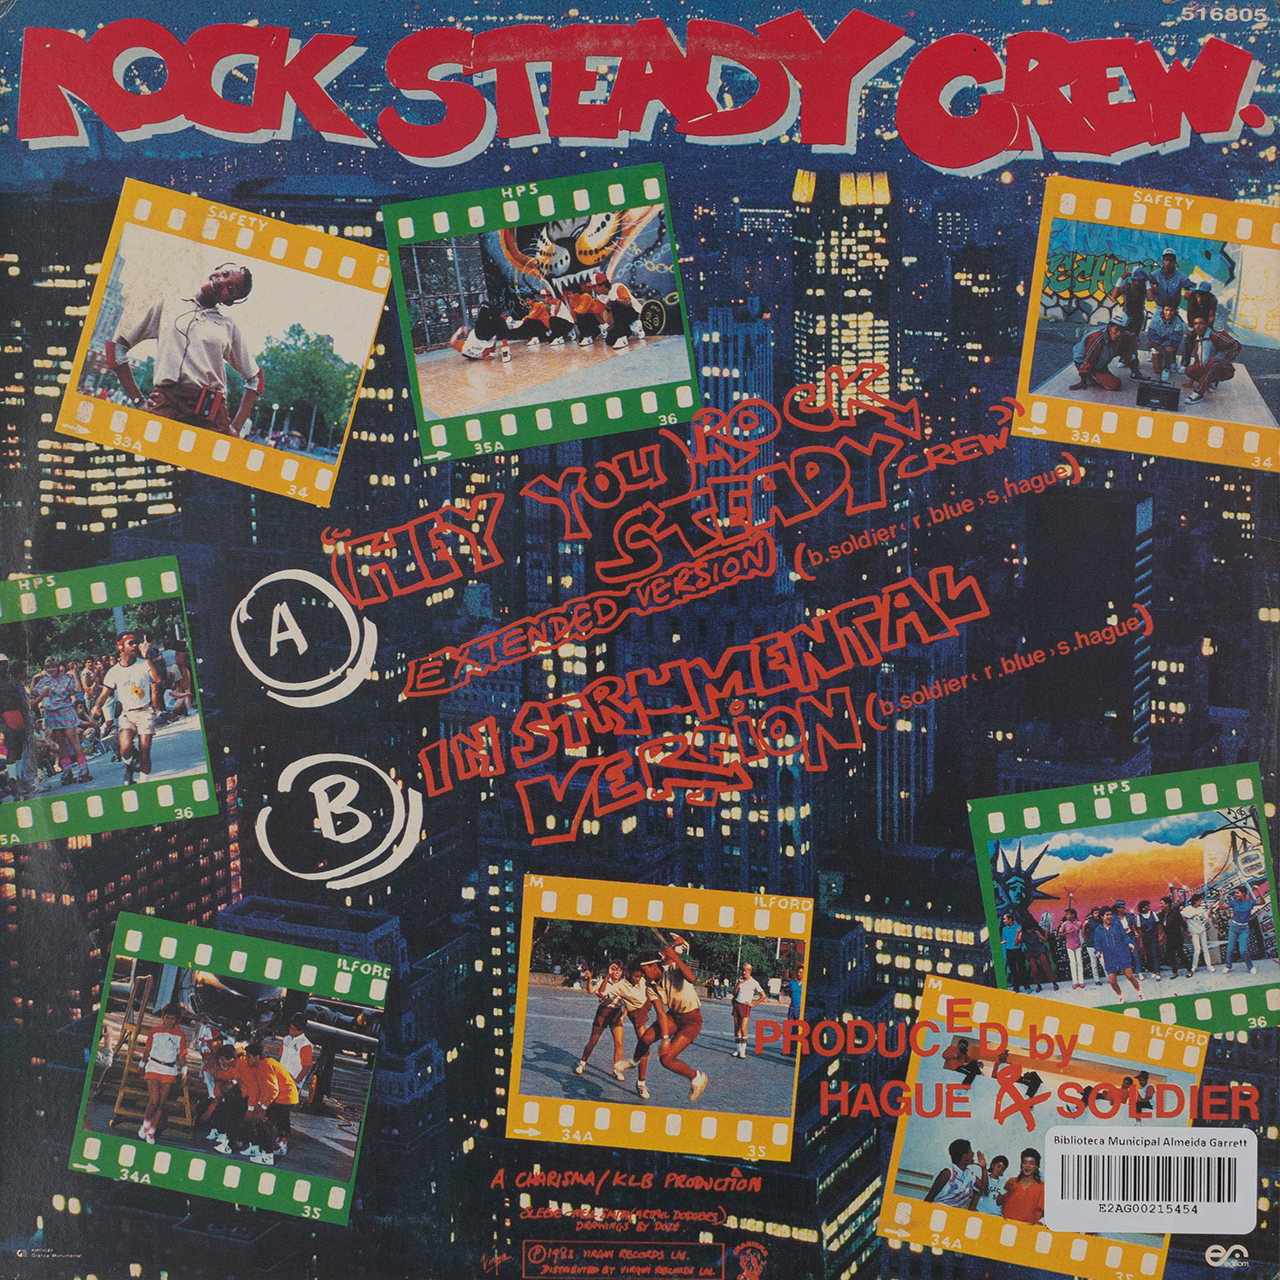 (Hey You) Rock Steady Crew